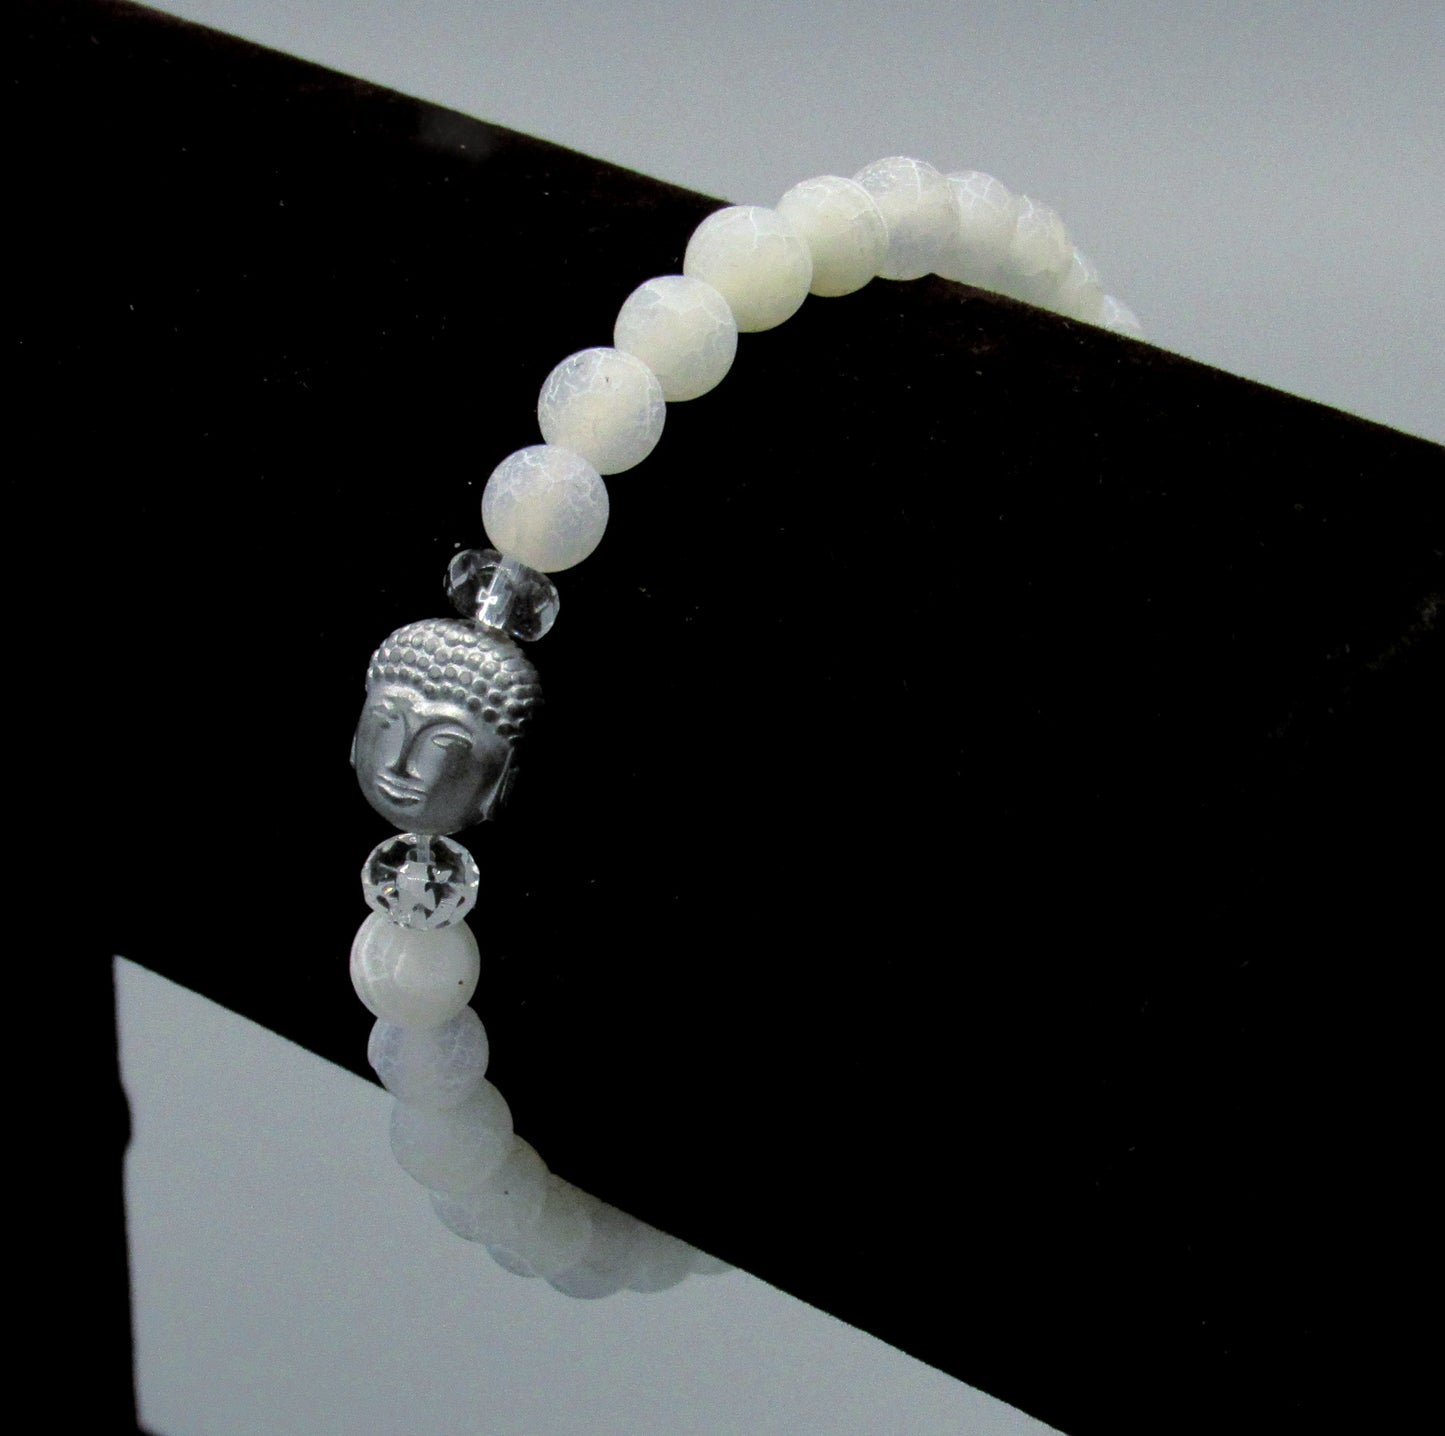 Matte Spider Vein and White Agate Gemstone “Faith” Bracelet with Hematite Buddha